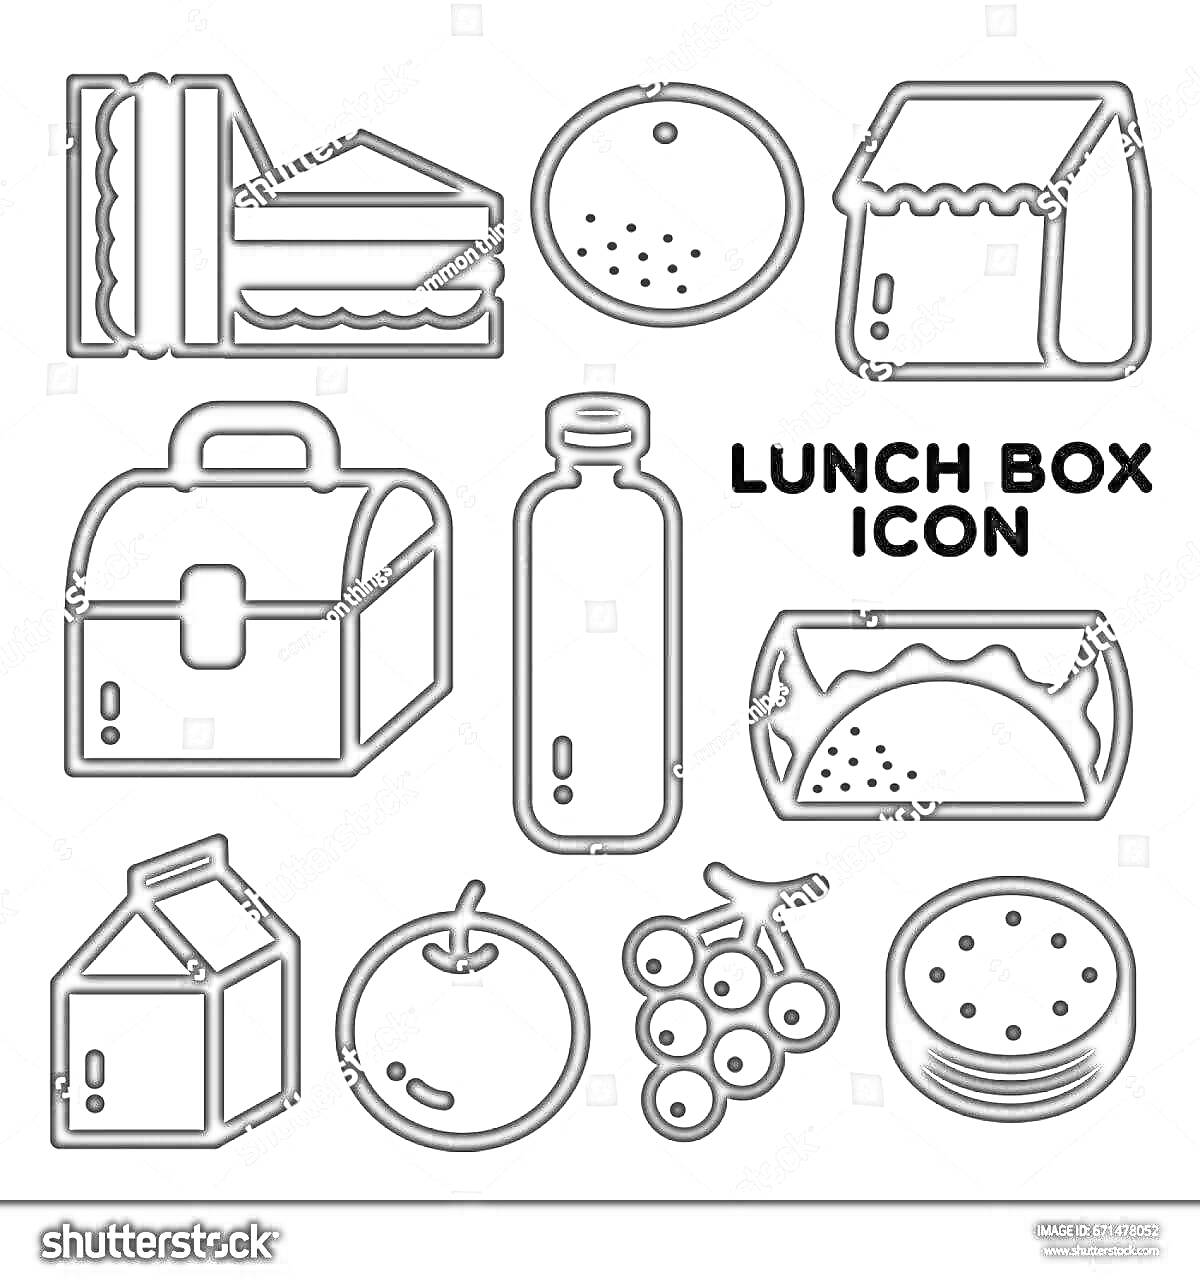 ланч бокс, бутерброды, печенье, бумажный пакет, коробка для еды, бутылка, тако, молочный пакет, яблоко, гроздь винограда